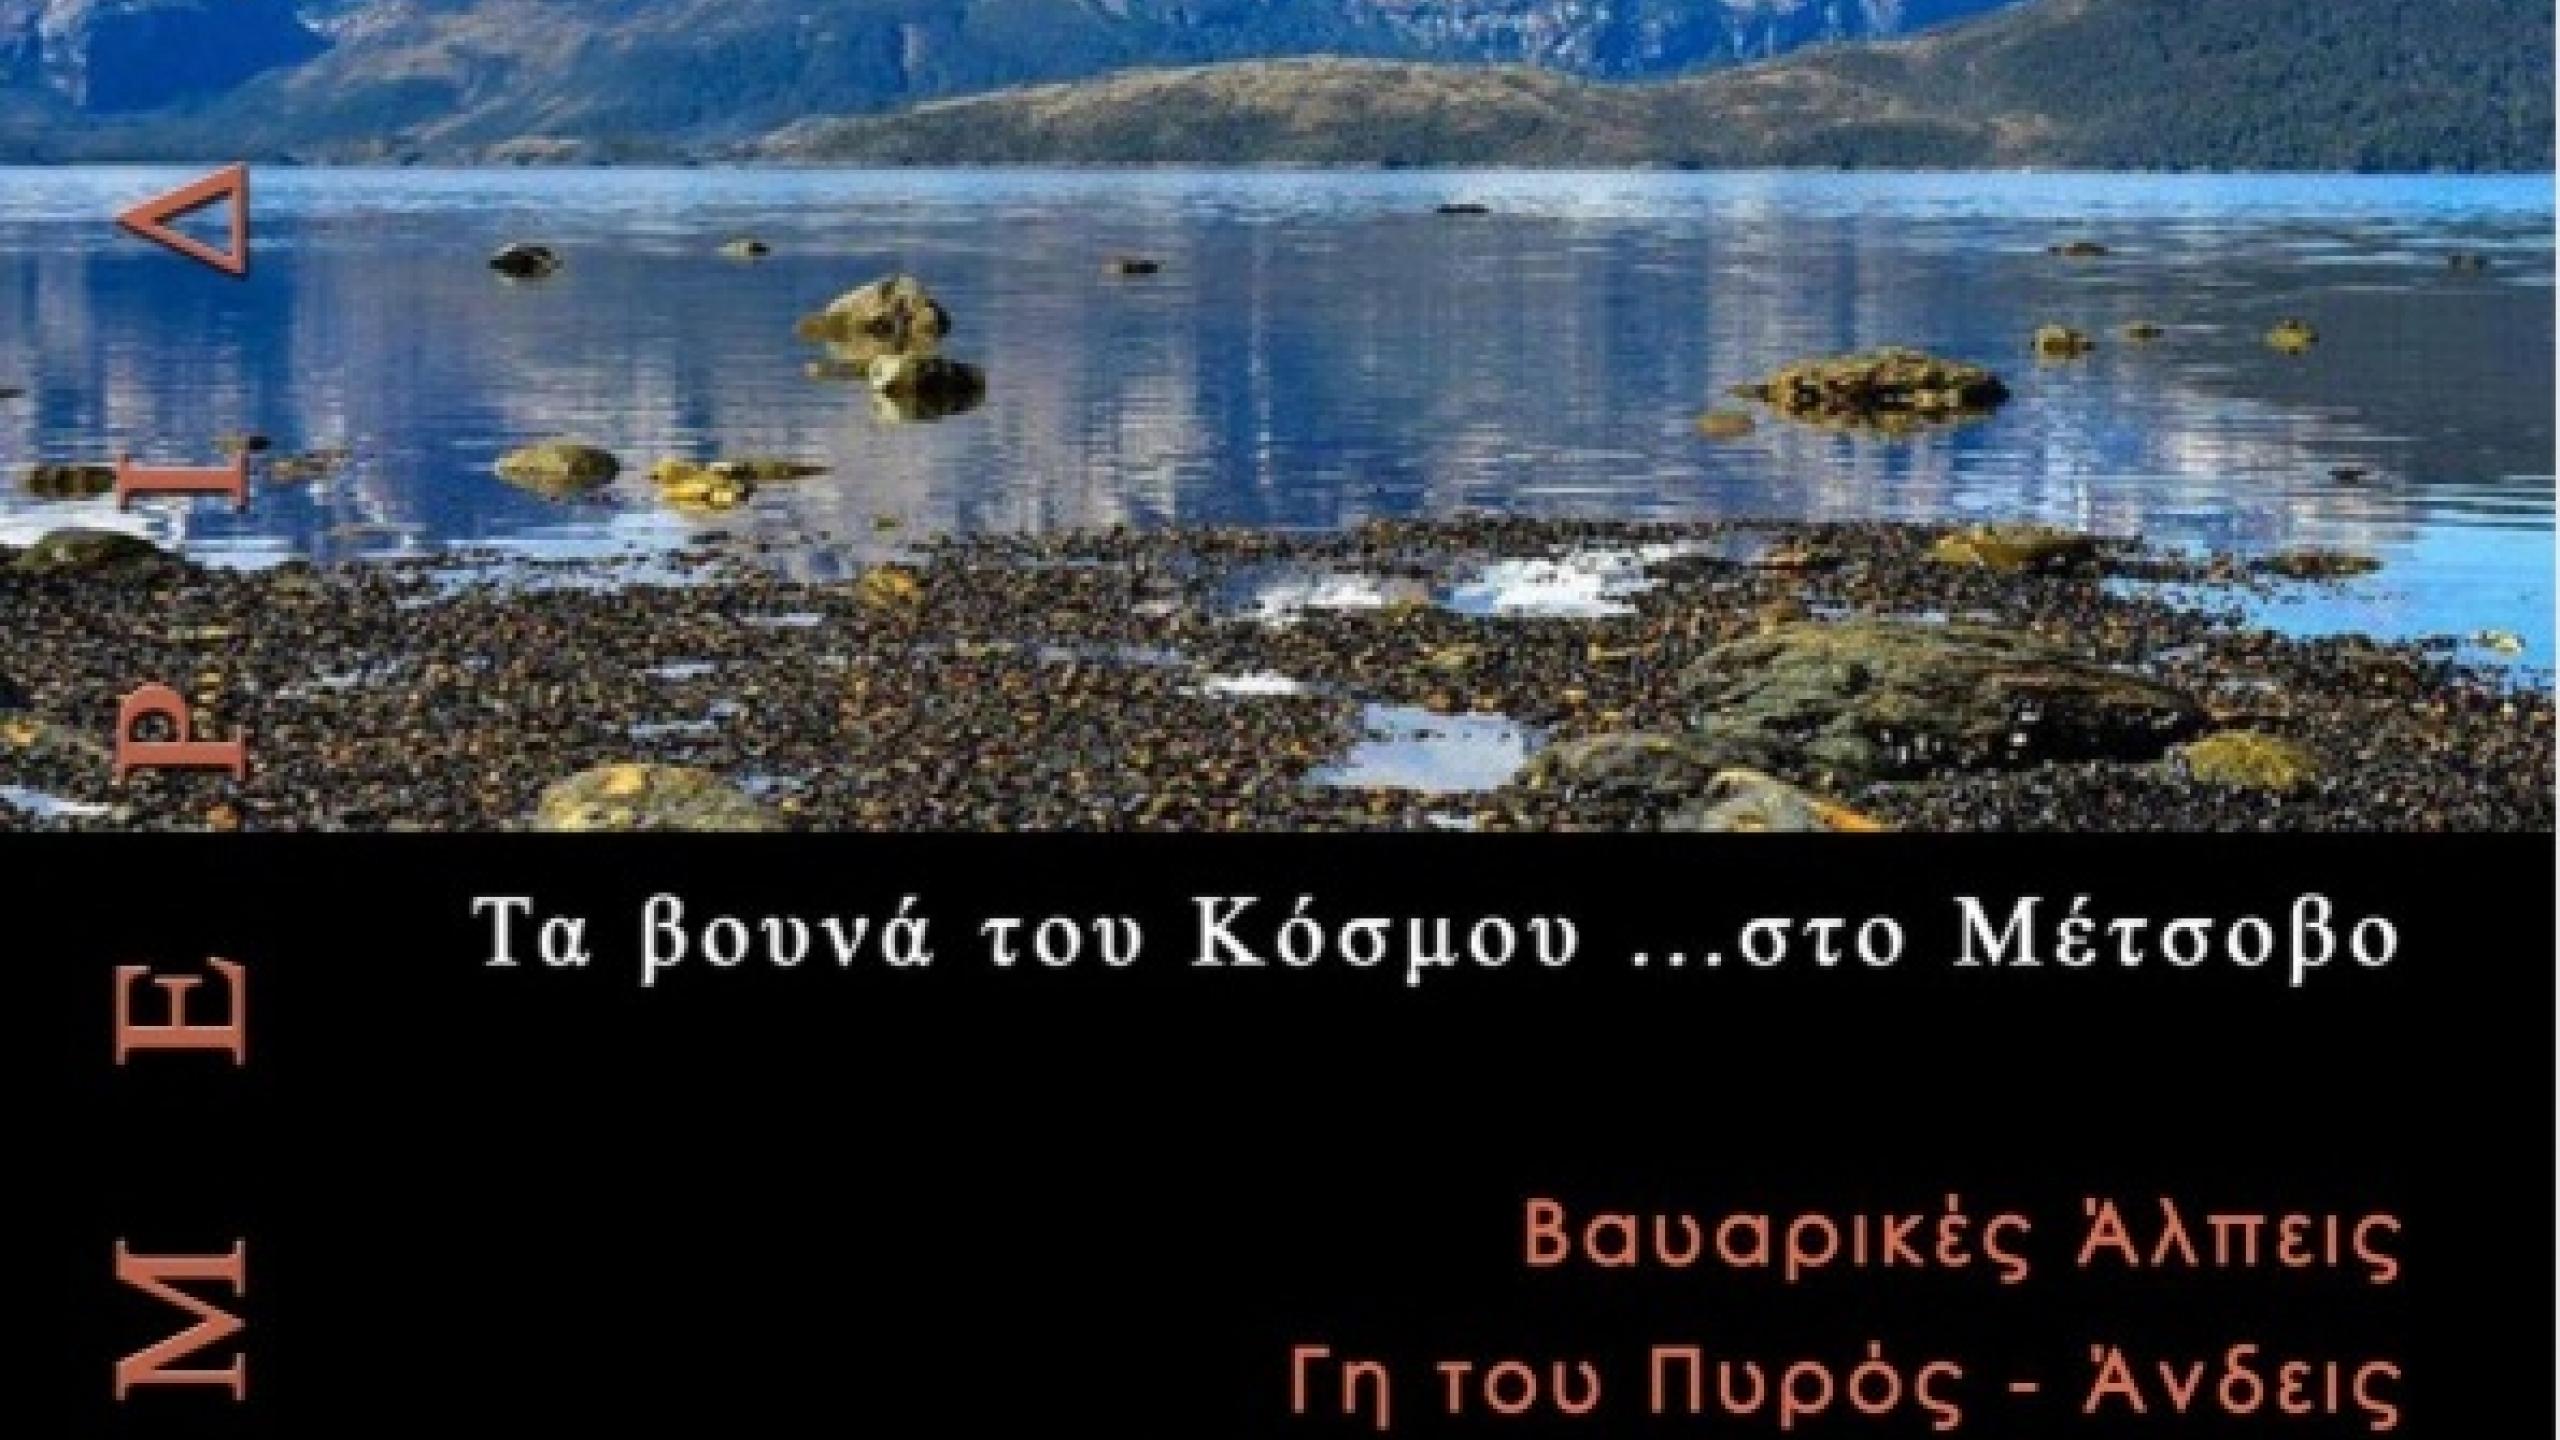 αφίσα τα βουνά του κόσμου... στο Μέτσοβο